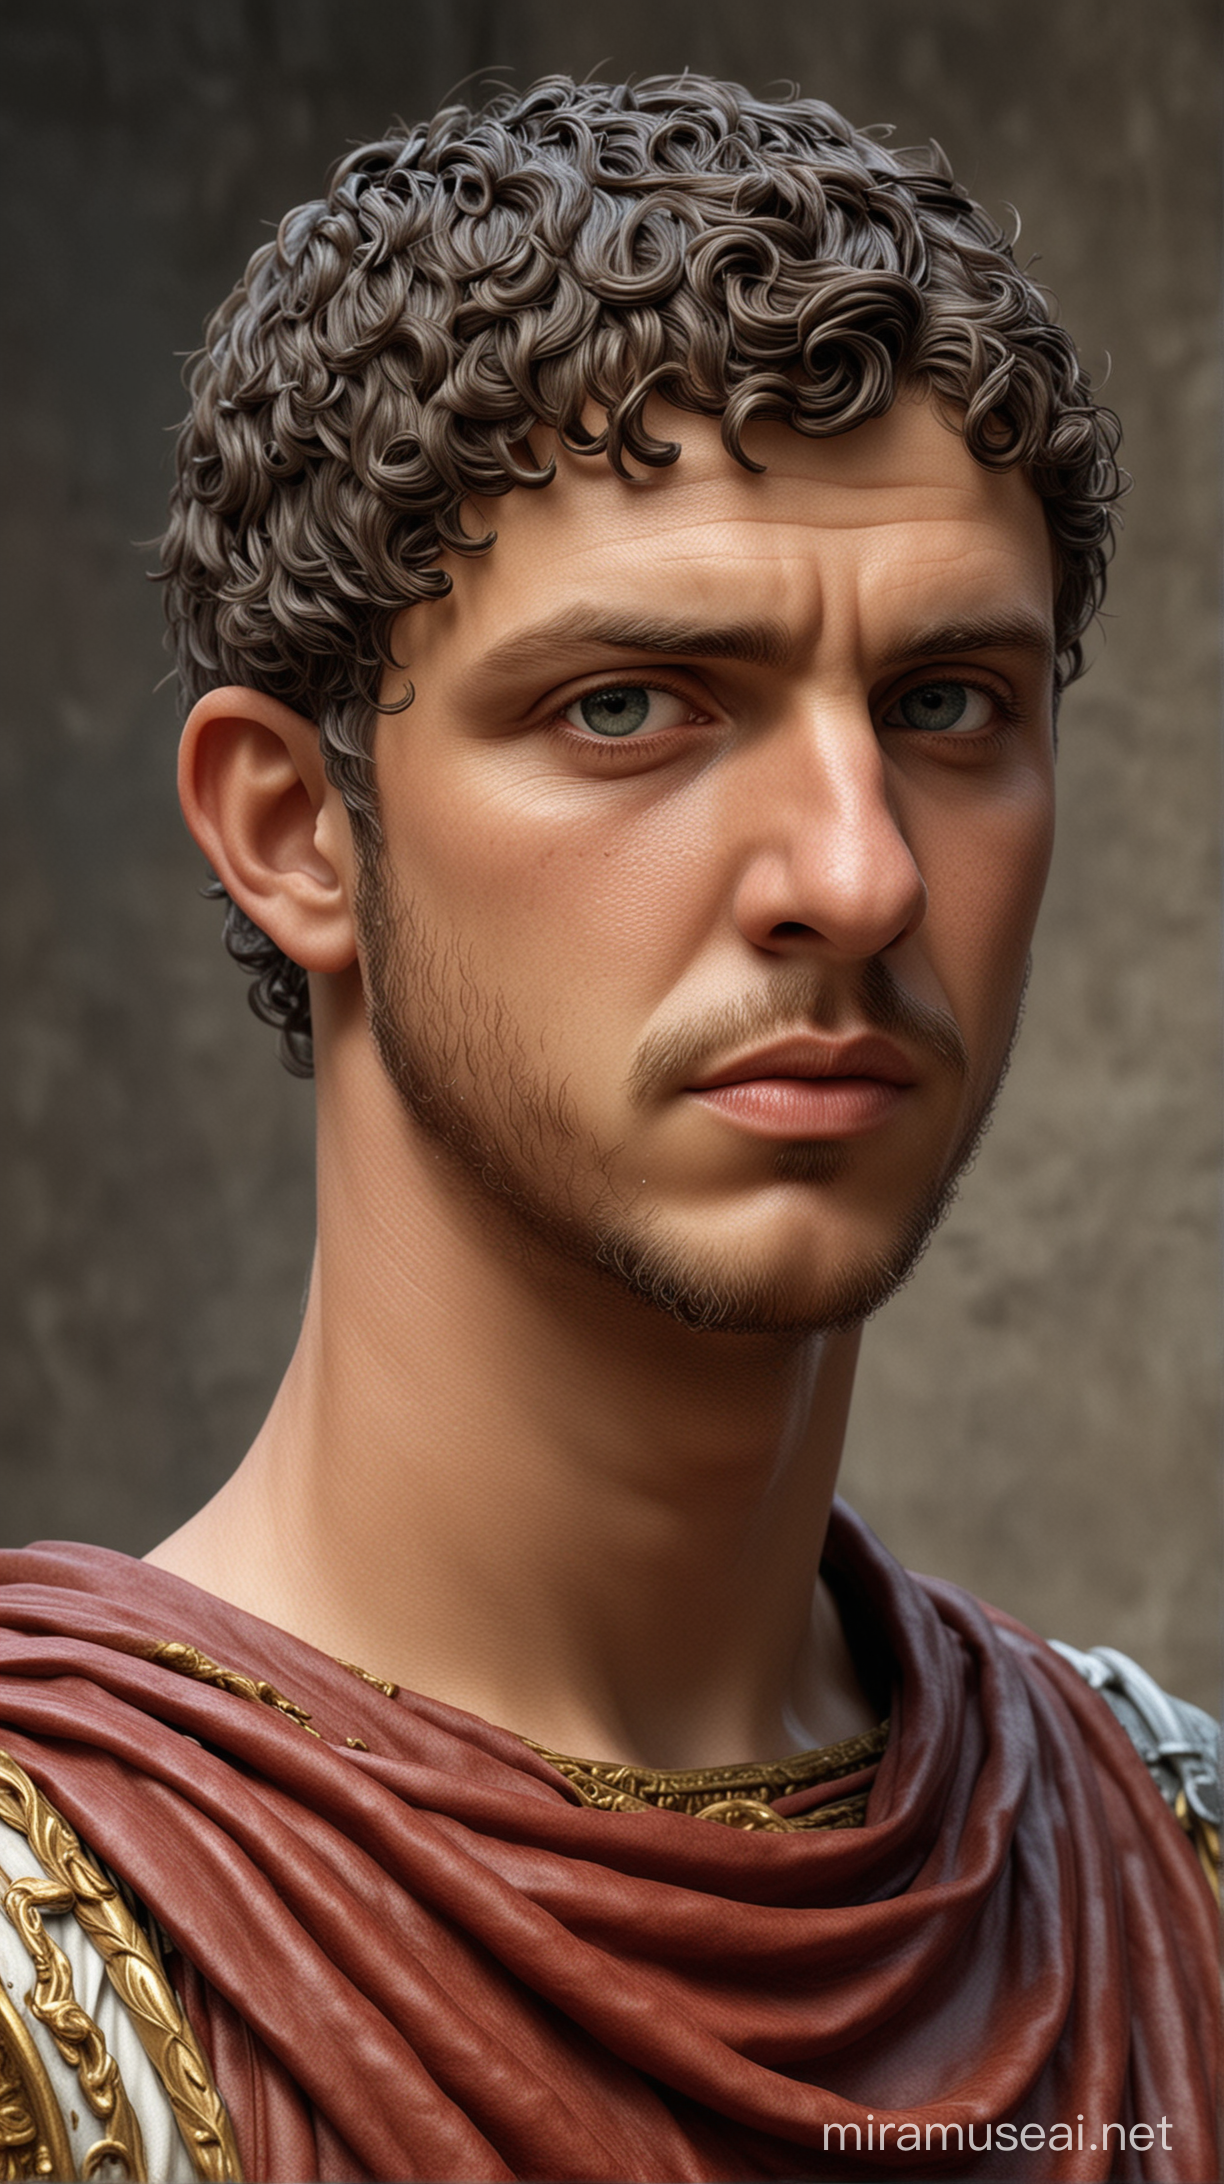 photos of Roman emperor Elagabalus when he was young. hyper realistic